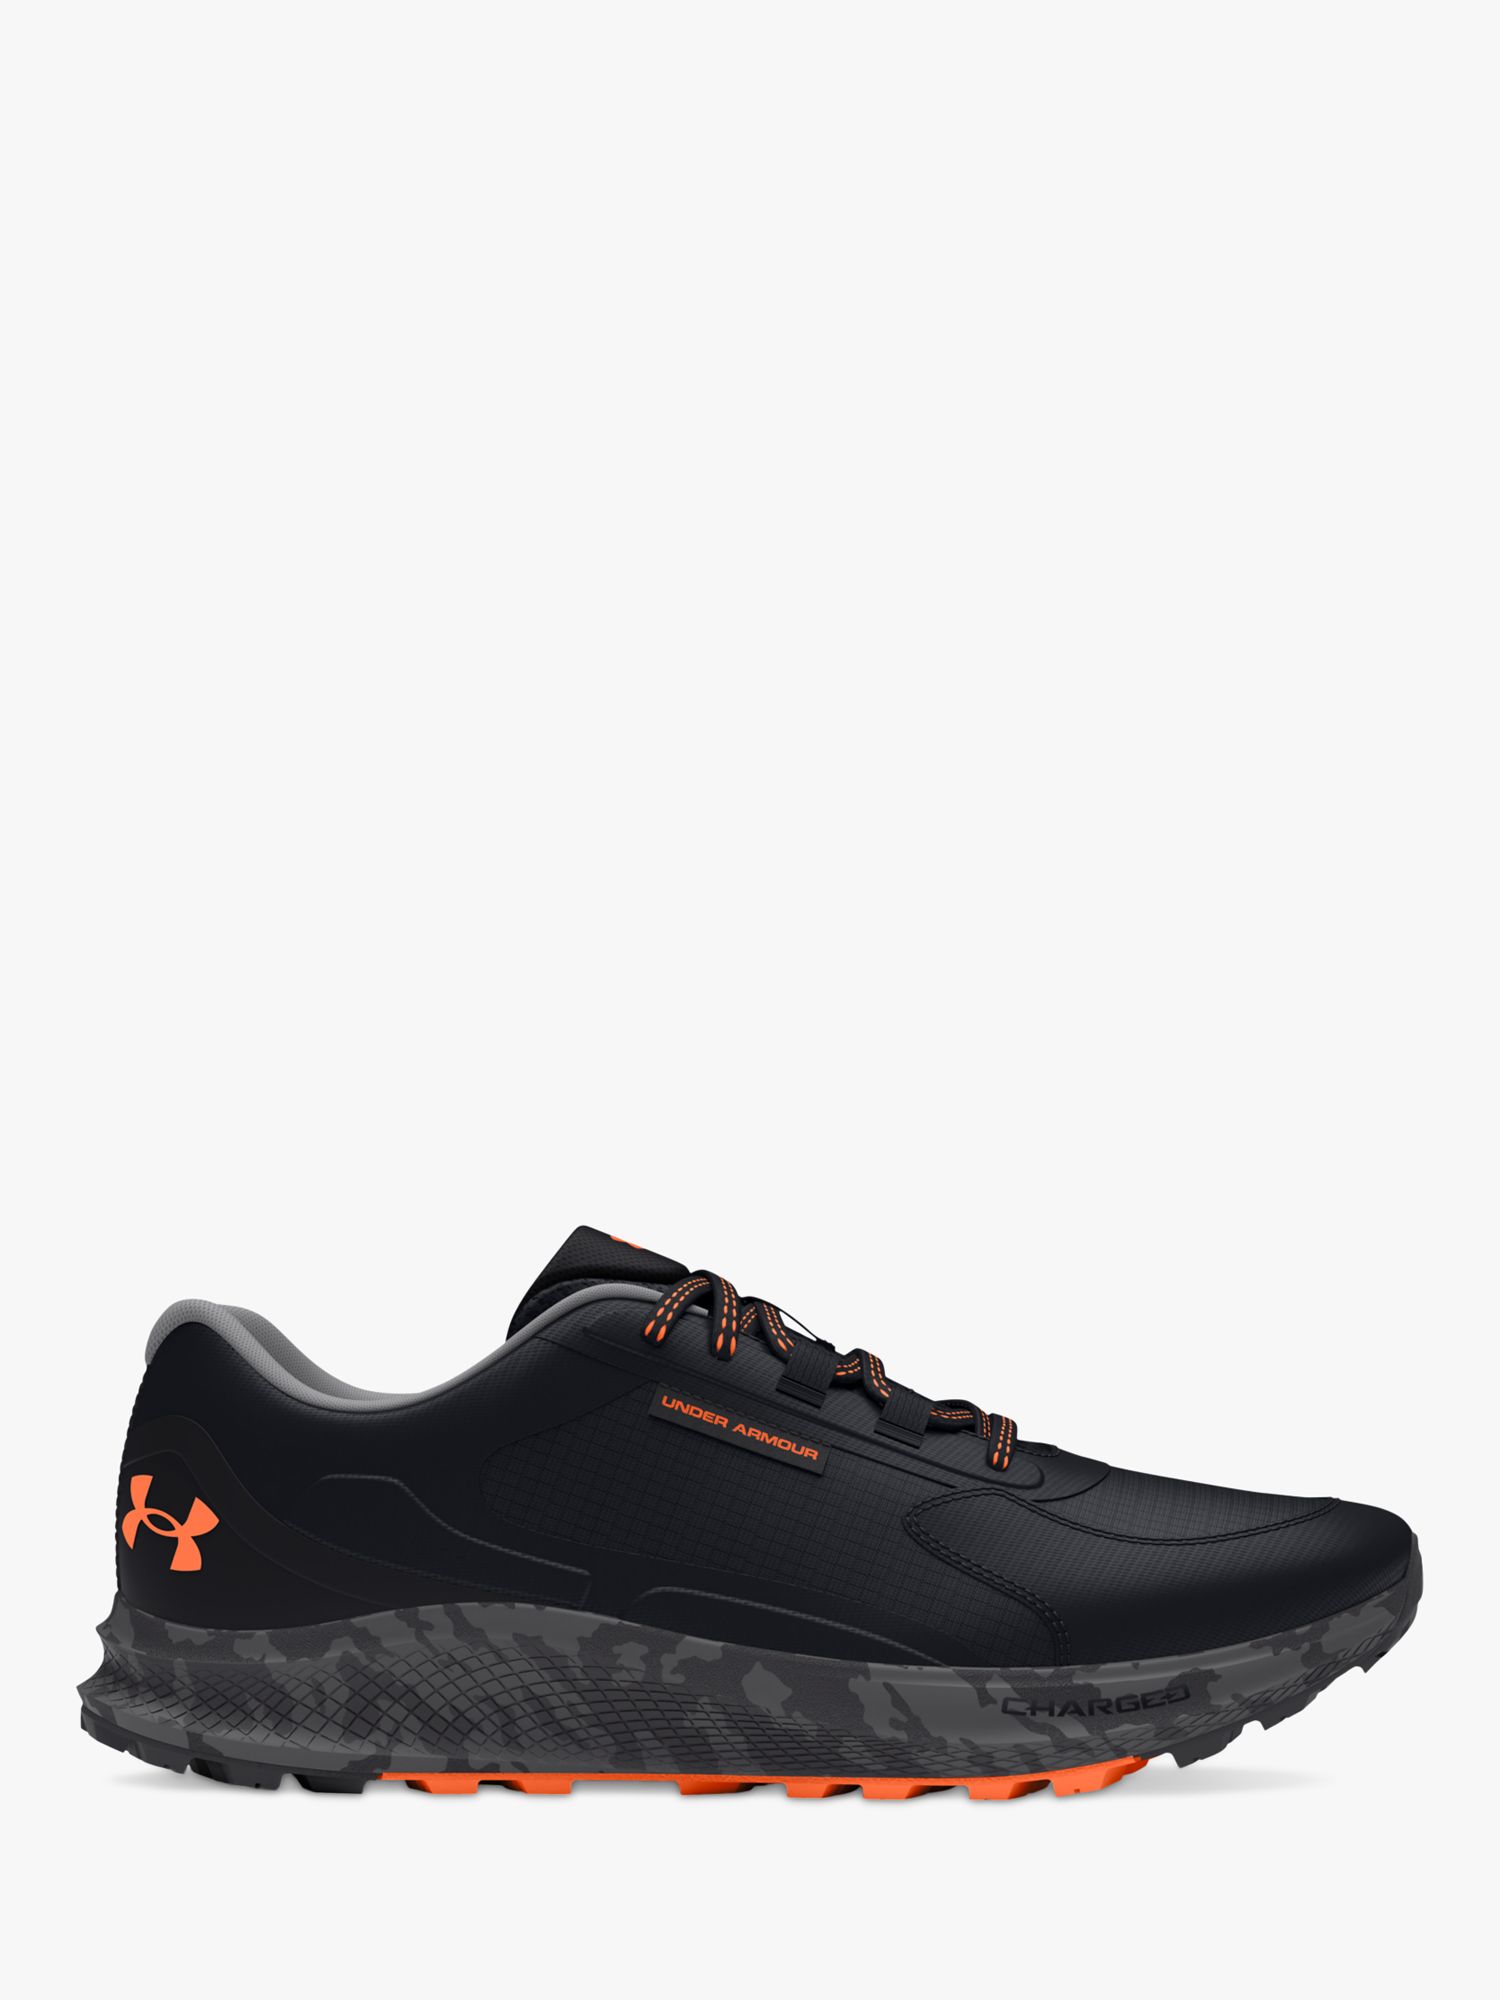 Under Armour Bandit Trail 3 Men's Running Shoes, Black/Orange Blast, 10